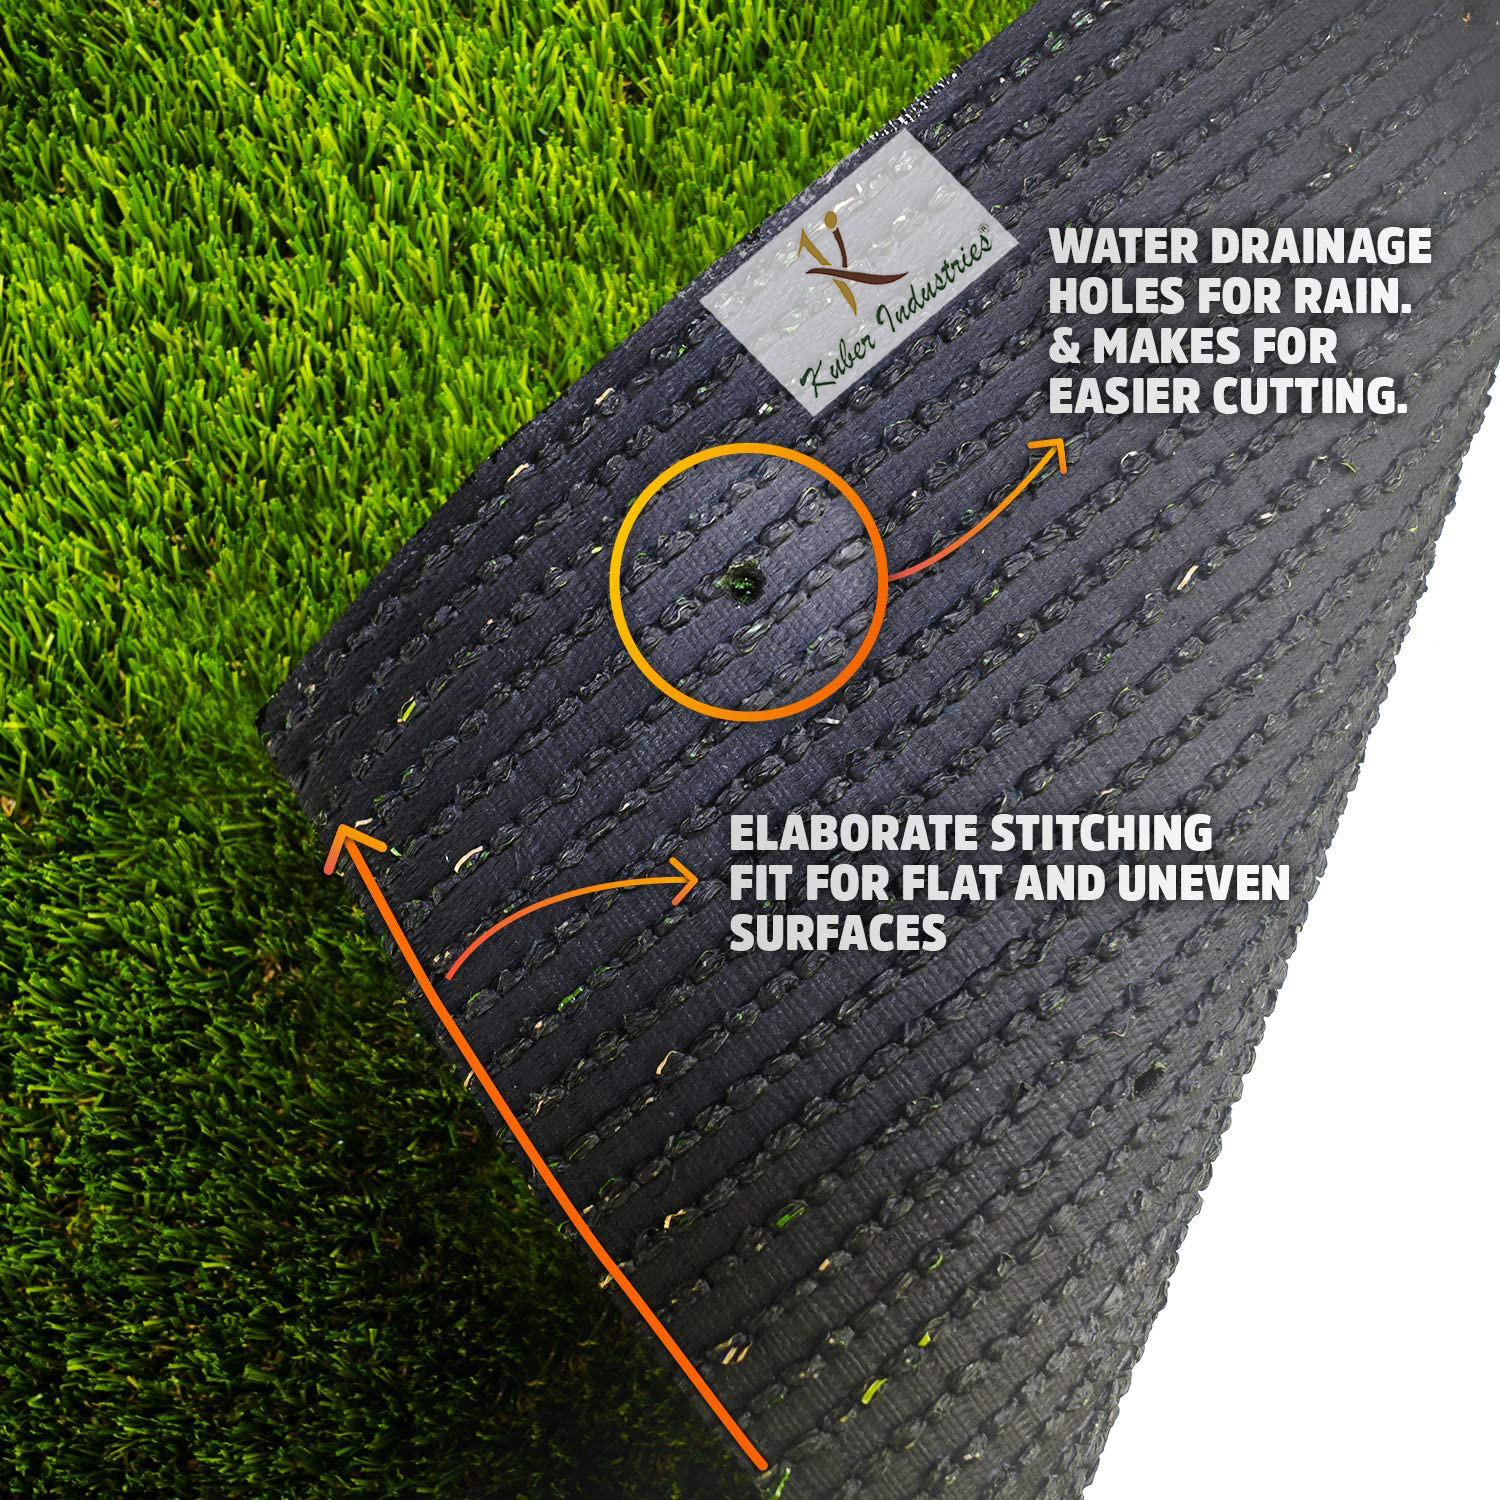 Kuber Industries 45 MM Artificial Grass Mat for Balcony Or Doormat, Artificial Grass (16